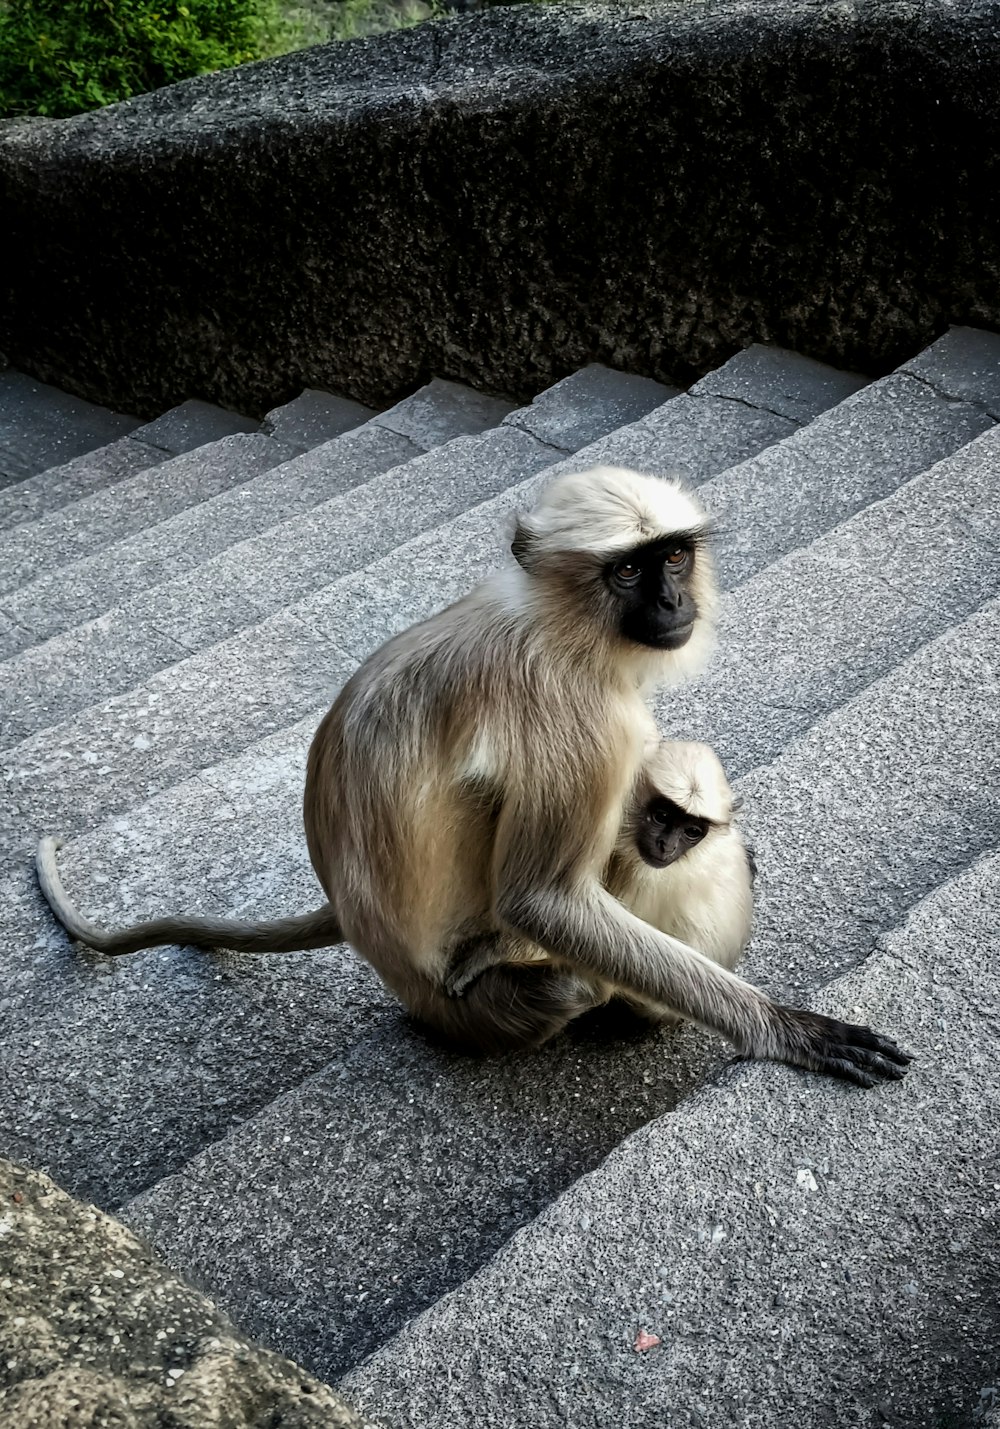 Un mono sentado en una roca